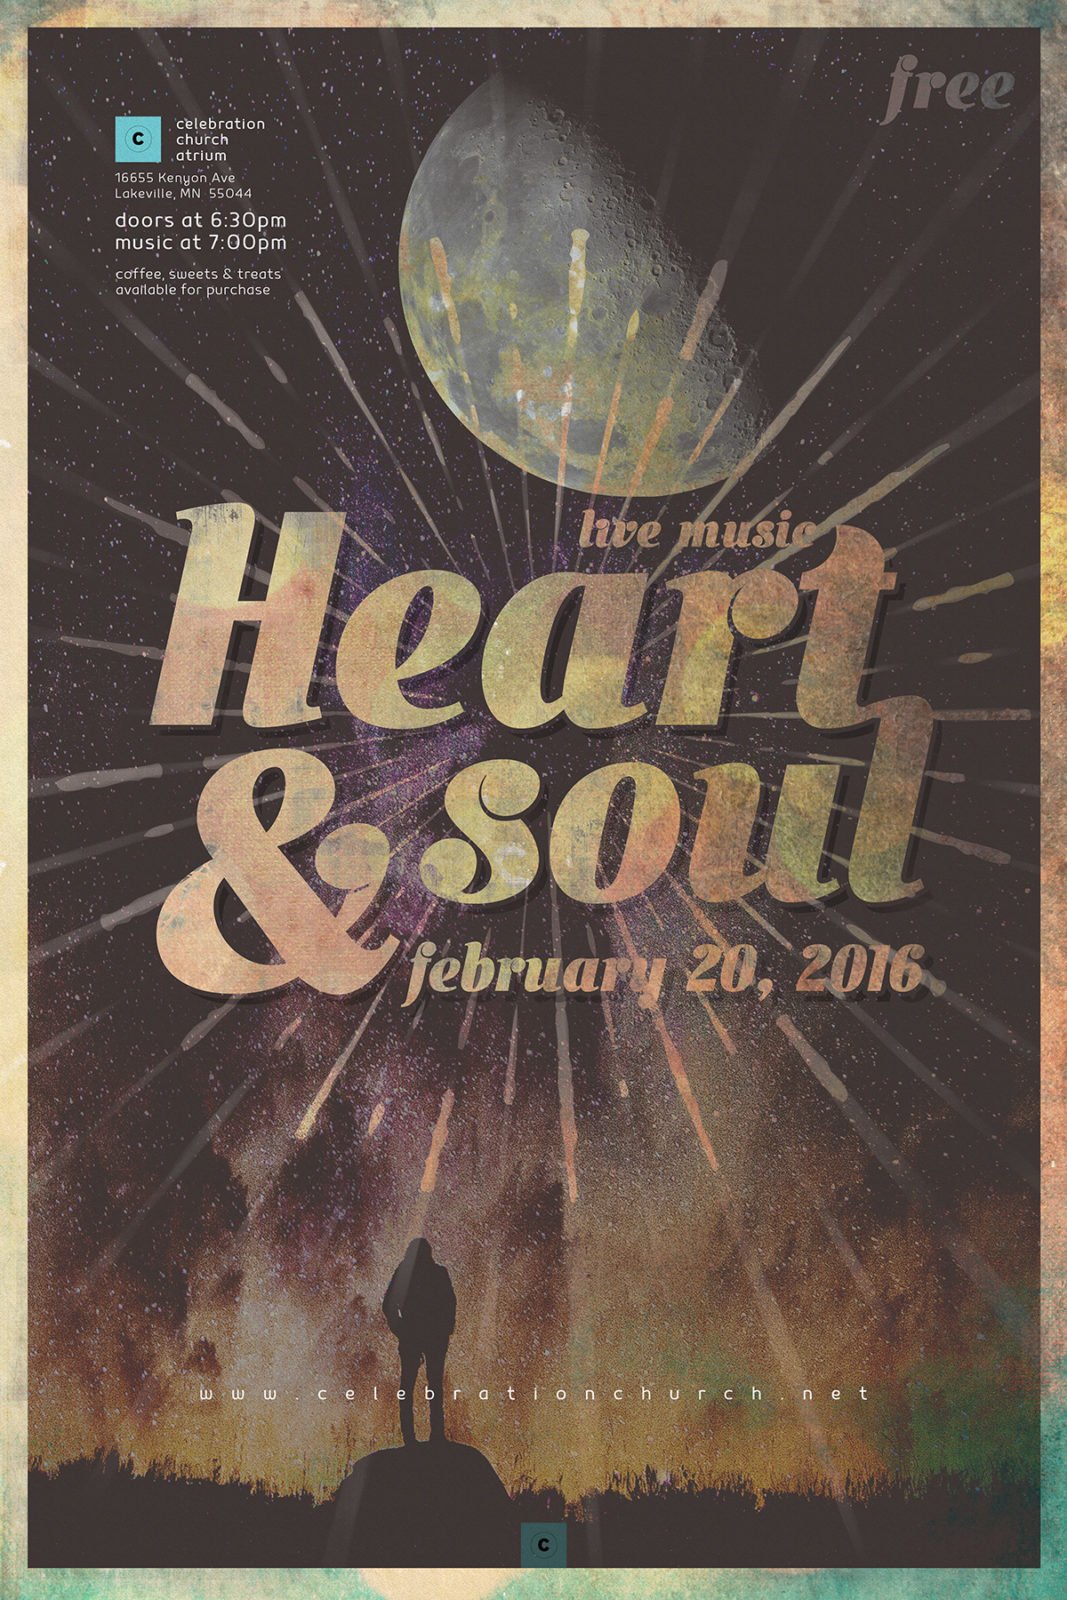 Live Concert Event Poster Design